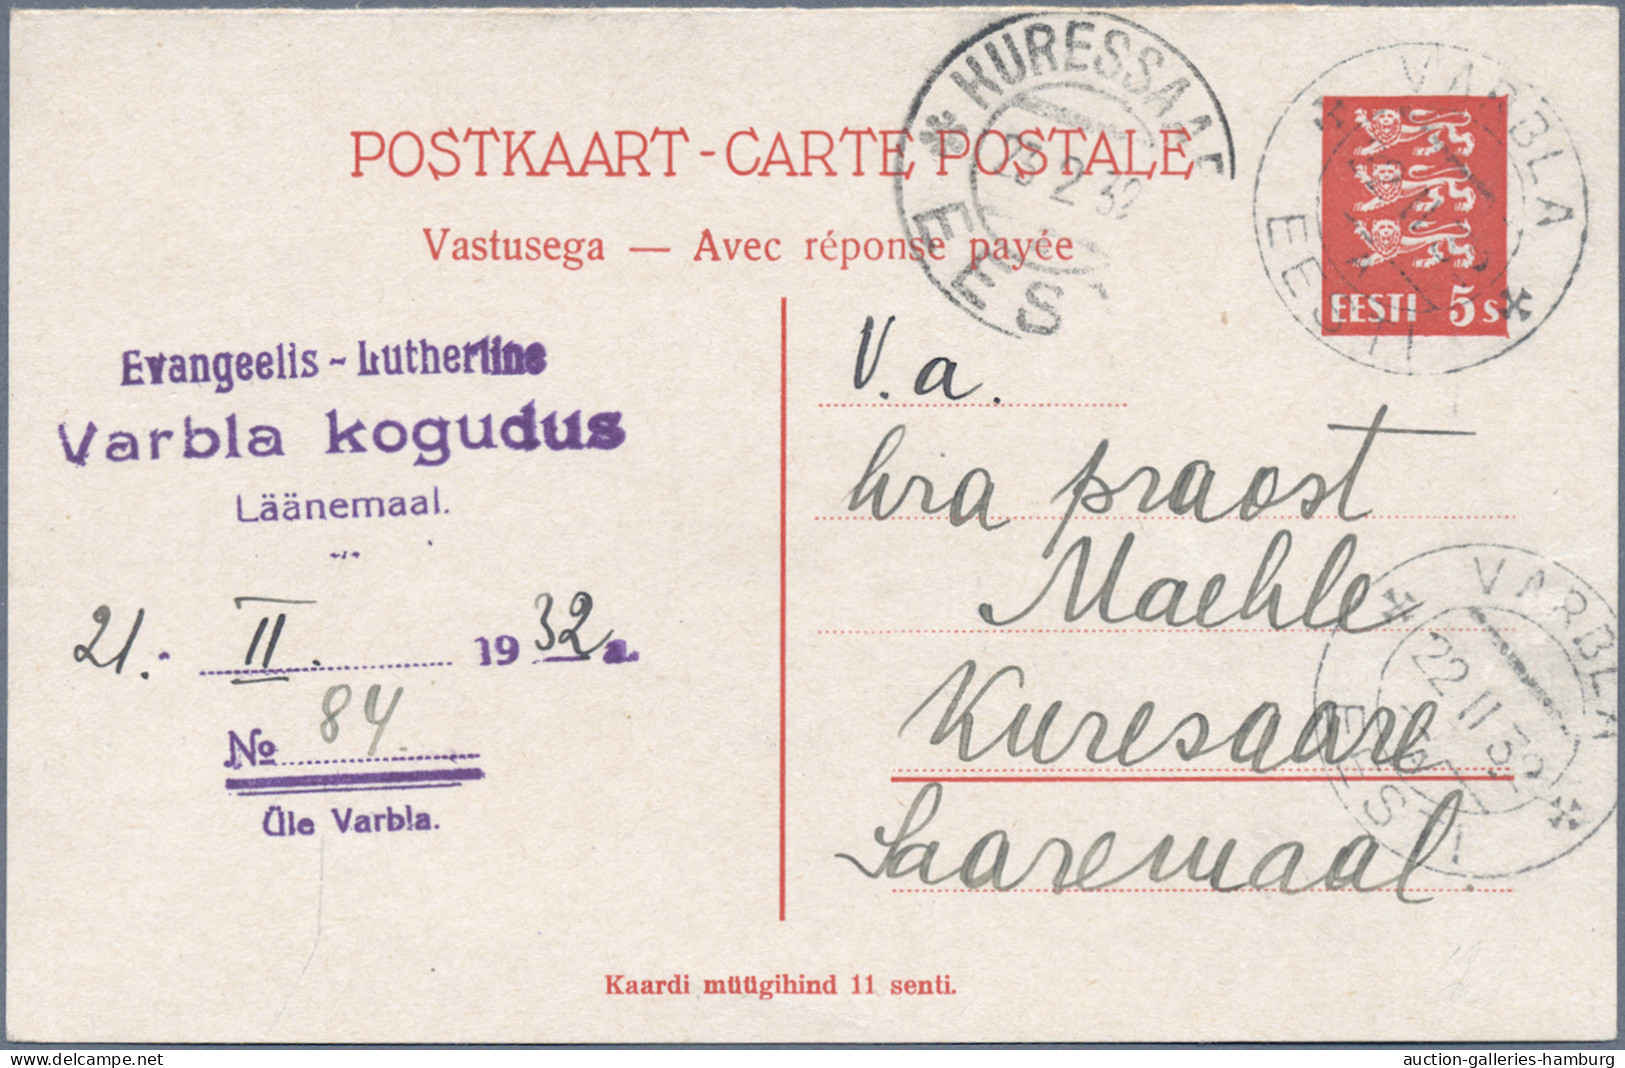 Estonia - postal stationery: 1923-1938, Partie von 13 Ganzsachenkarten inkl. Fra